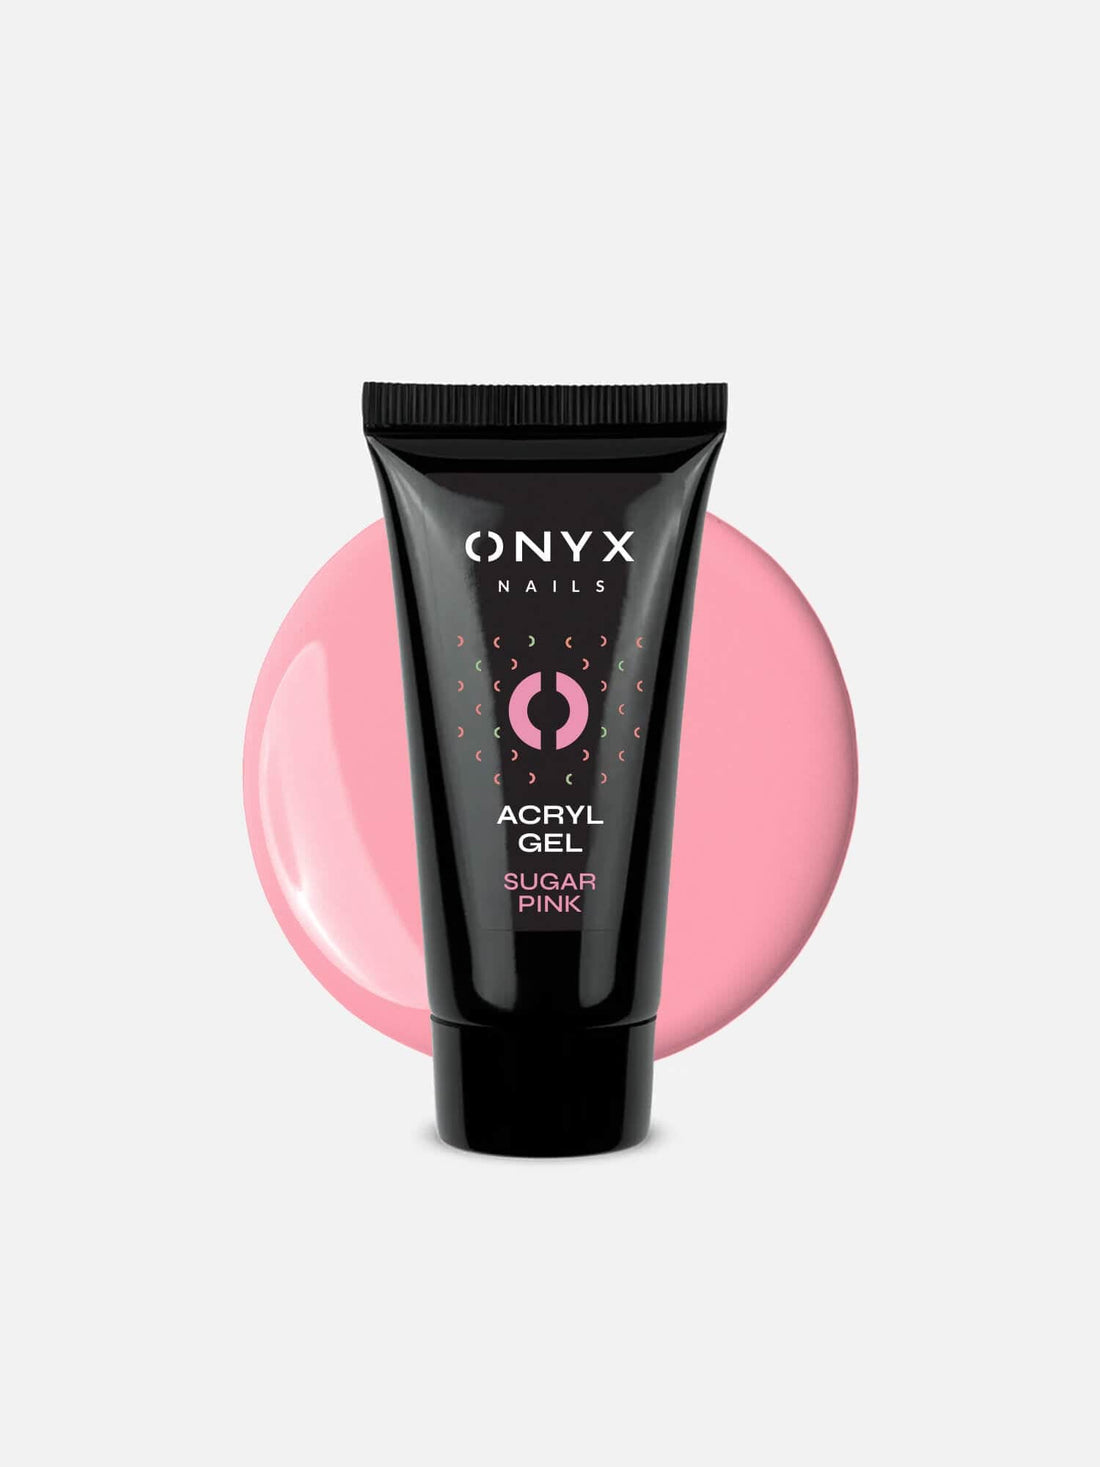 Onyx Nails AcrylGel Sugar Pink 30 g